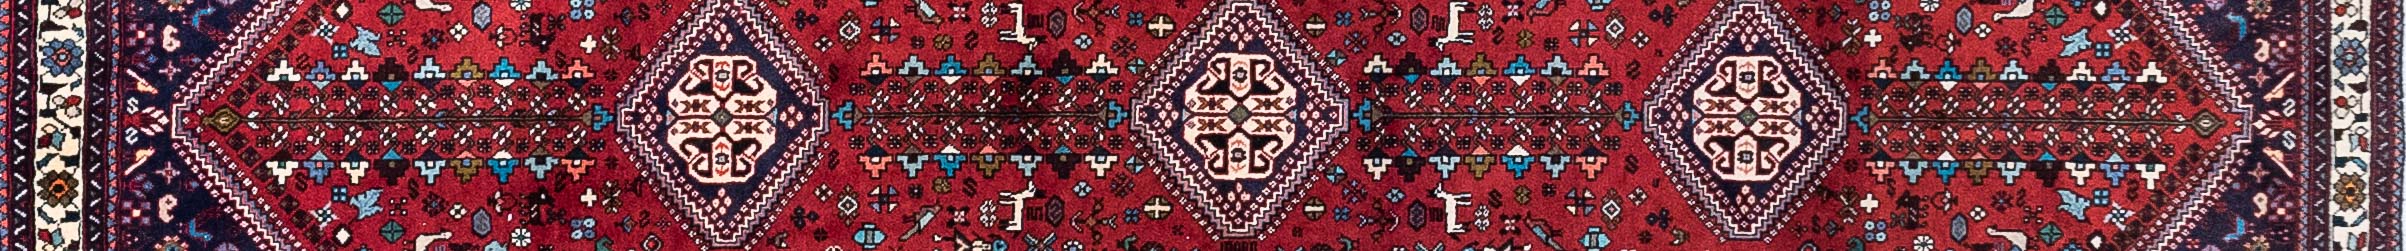 Abadeh Persian Carpet Rug N1Carpet Canada Montreal Tapis Persan 1200